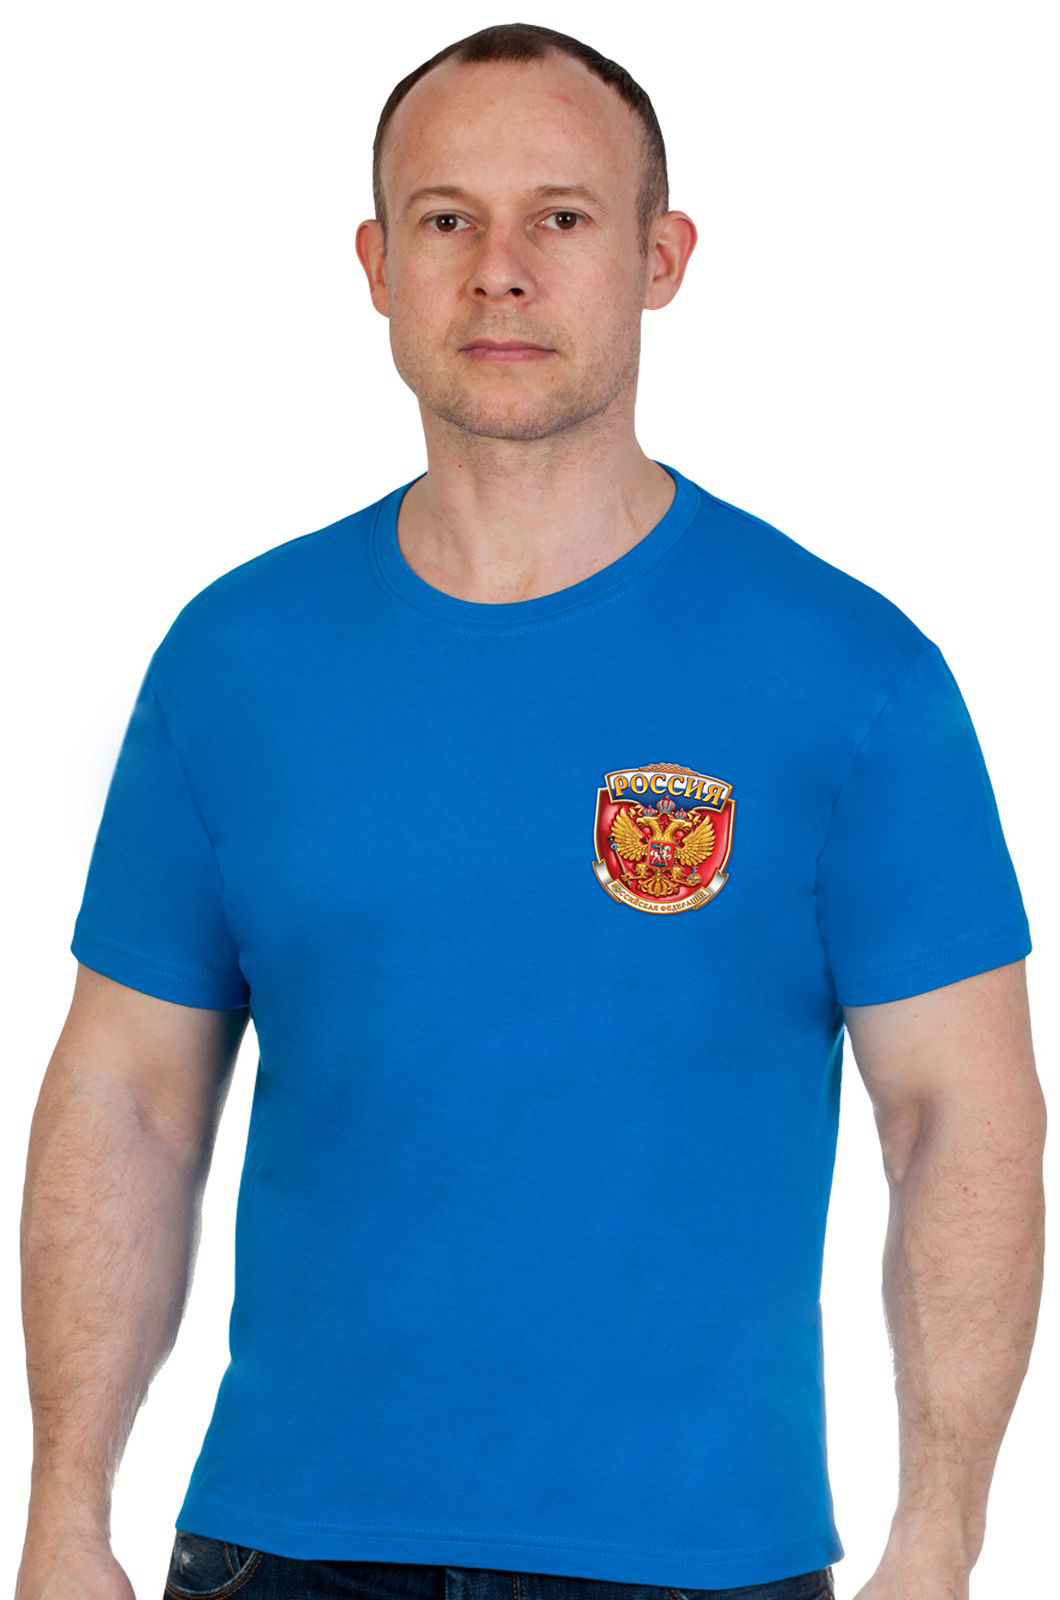 Купить крутую мужскую футболку РОССИЯ в подарок патриоту